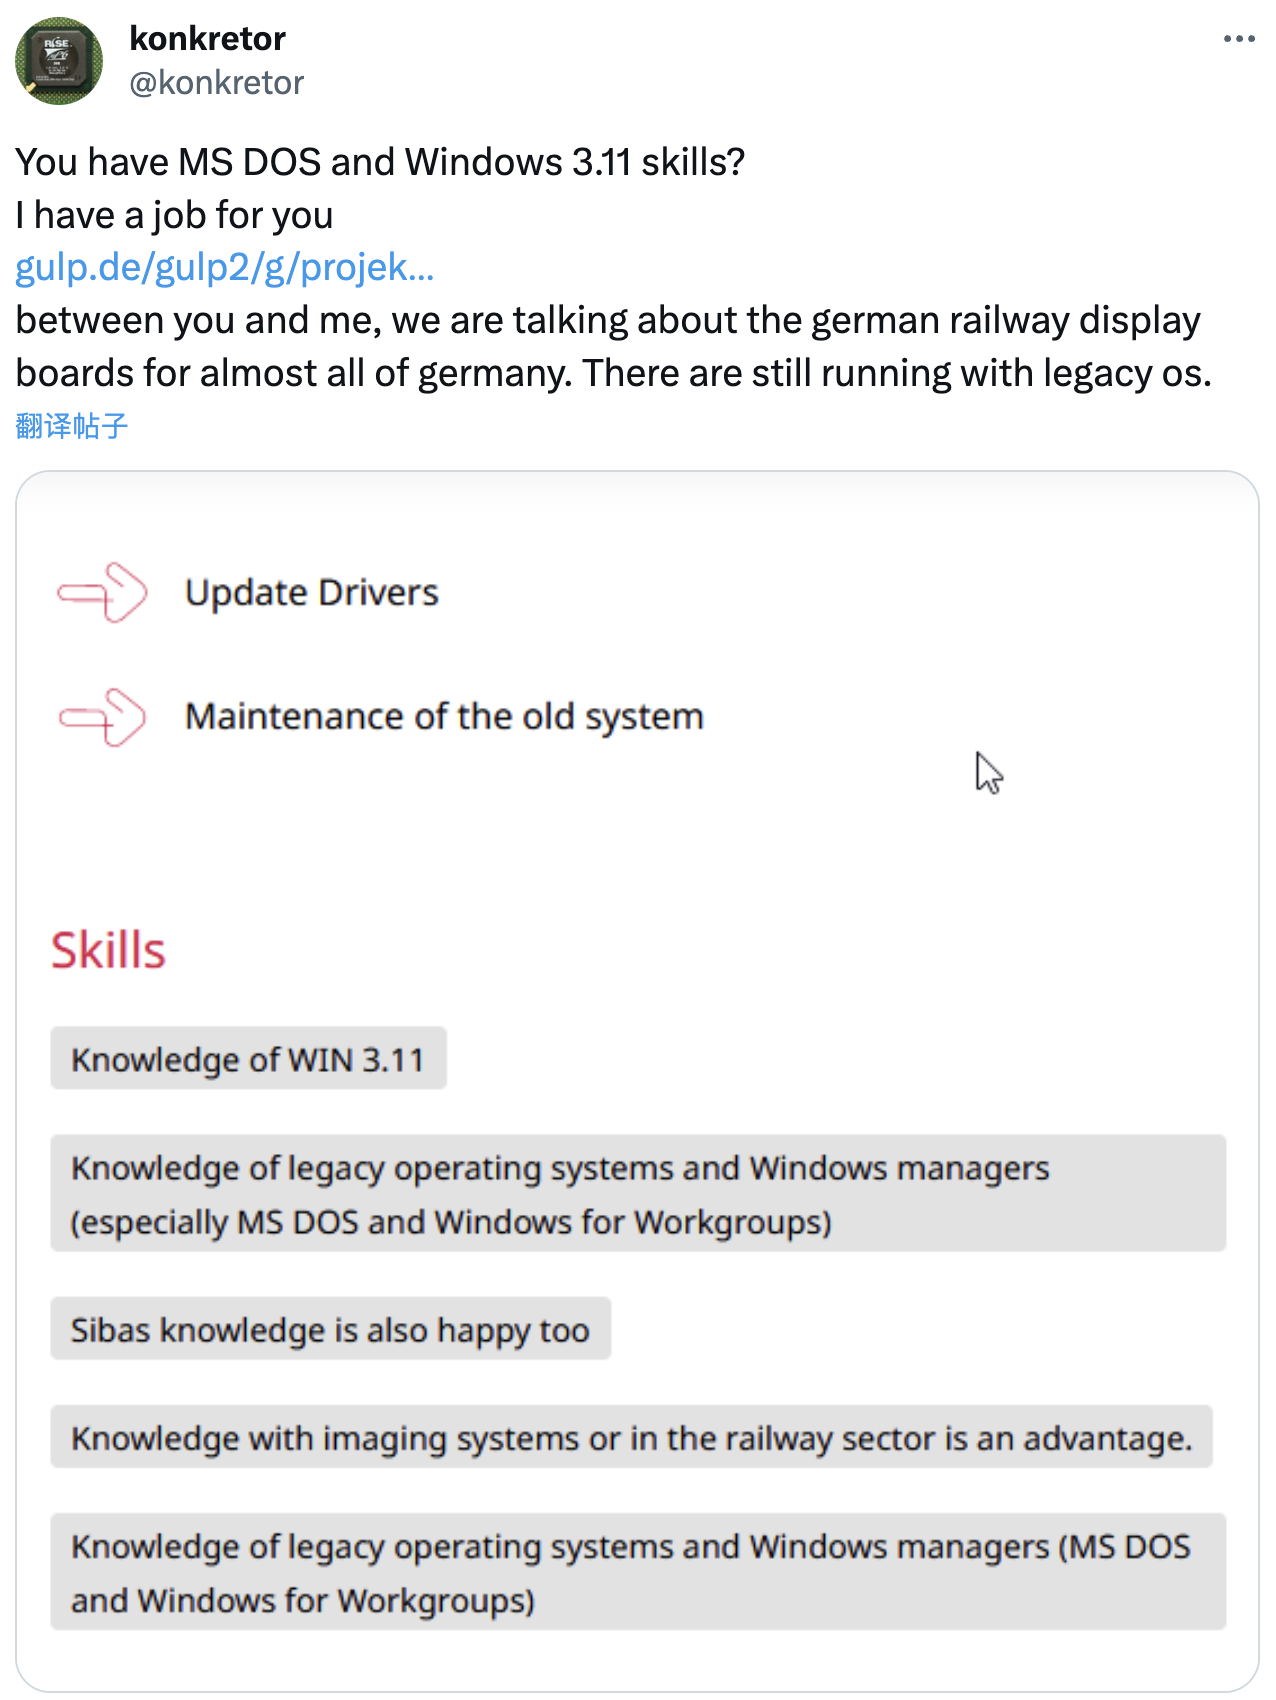 德国铁路公司招聘熟悉 MS-DOS 和 Windows 3.11 的 IT 管理员